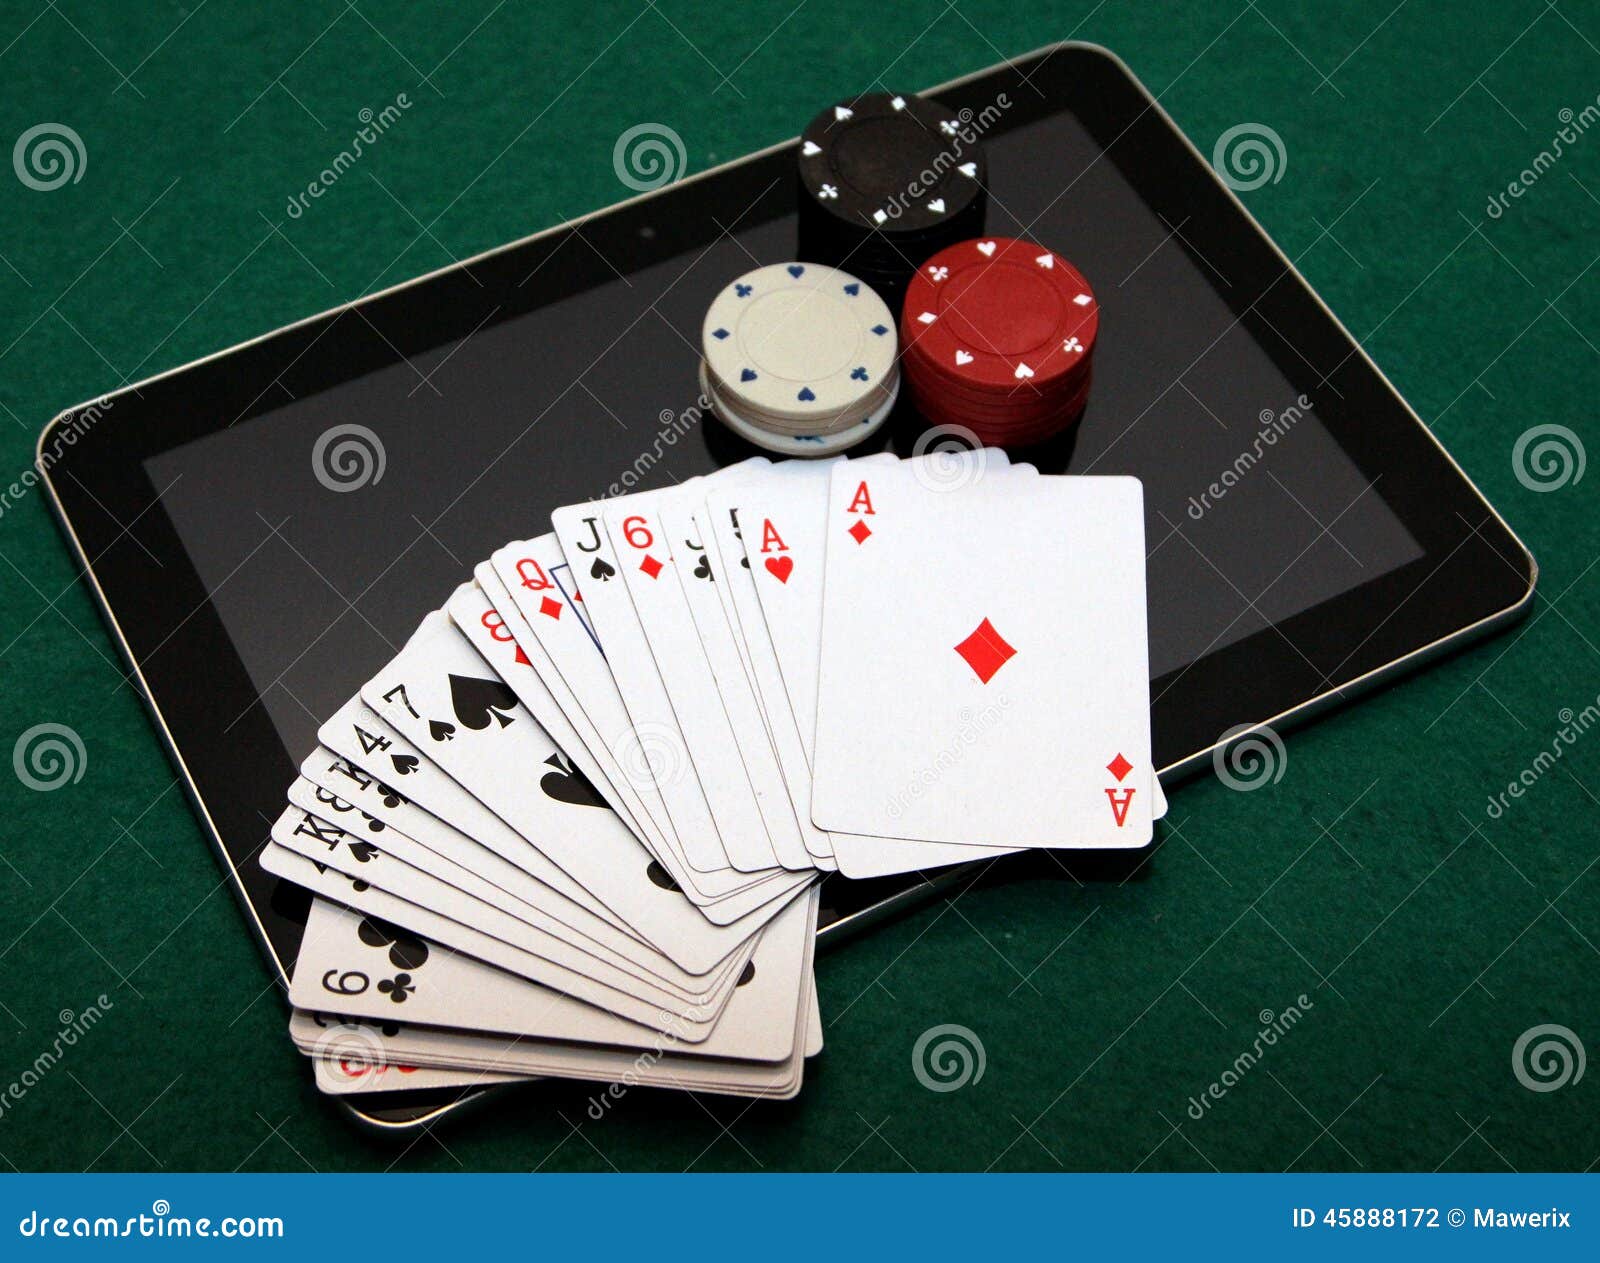 Онлайн казино карточных игр казино платья москва вконтакте